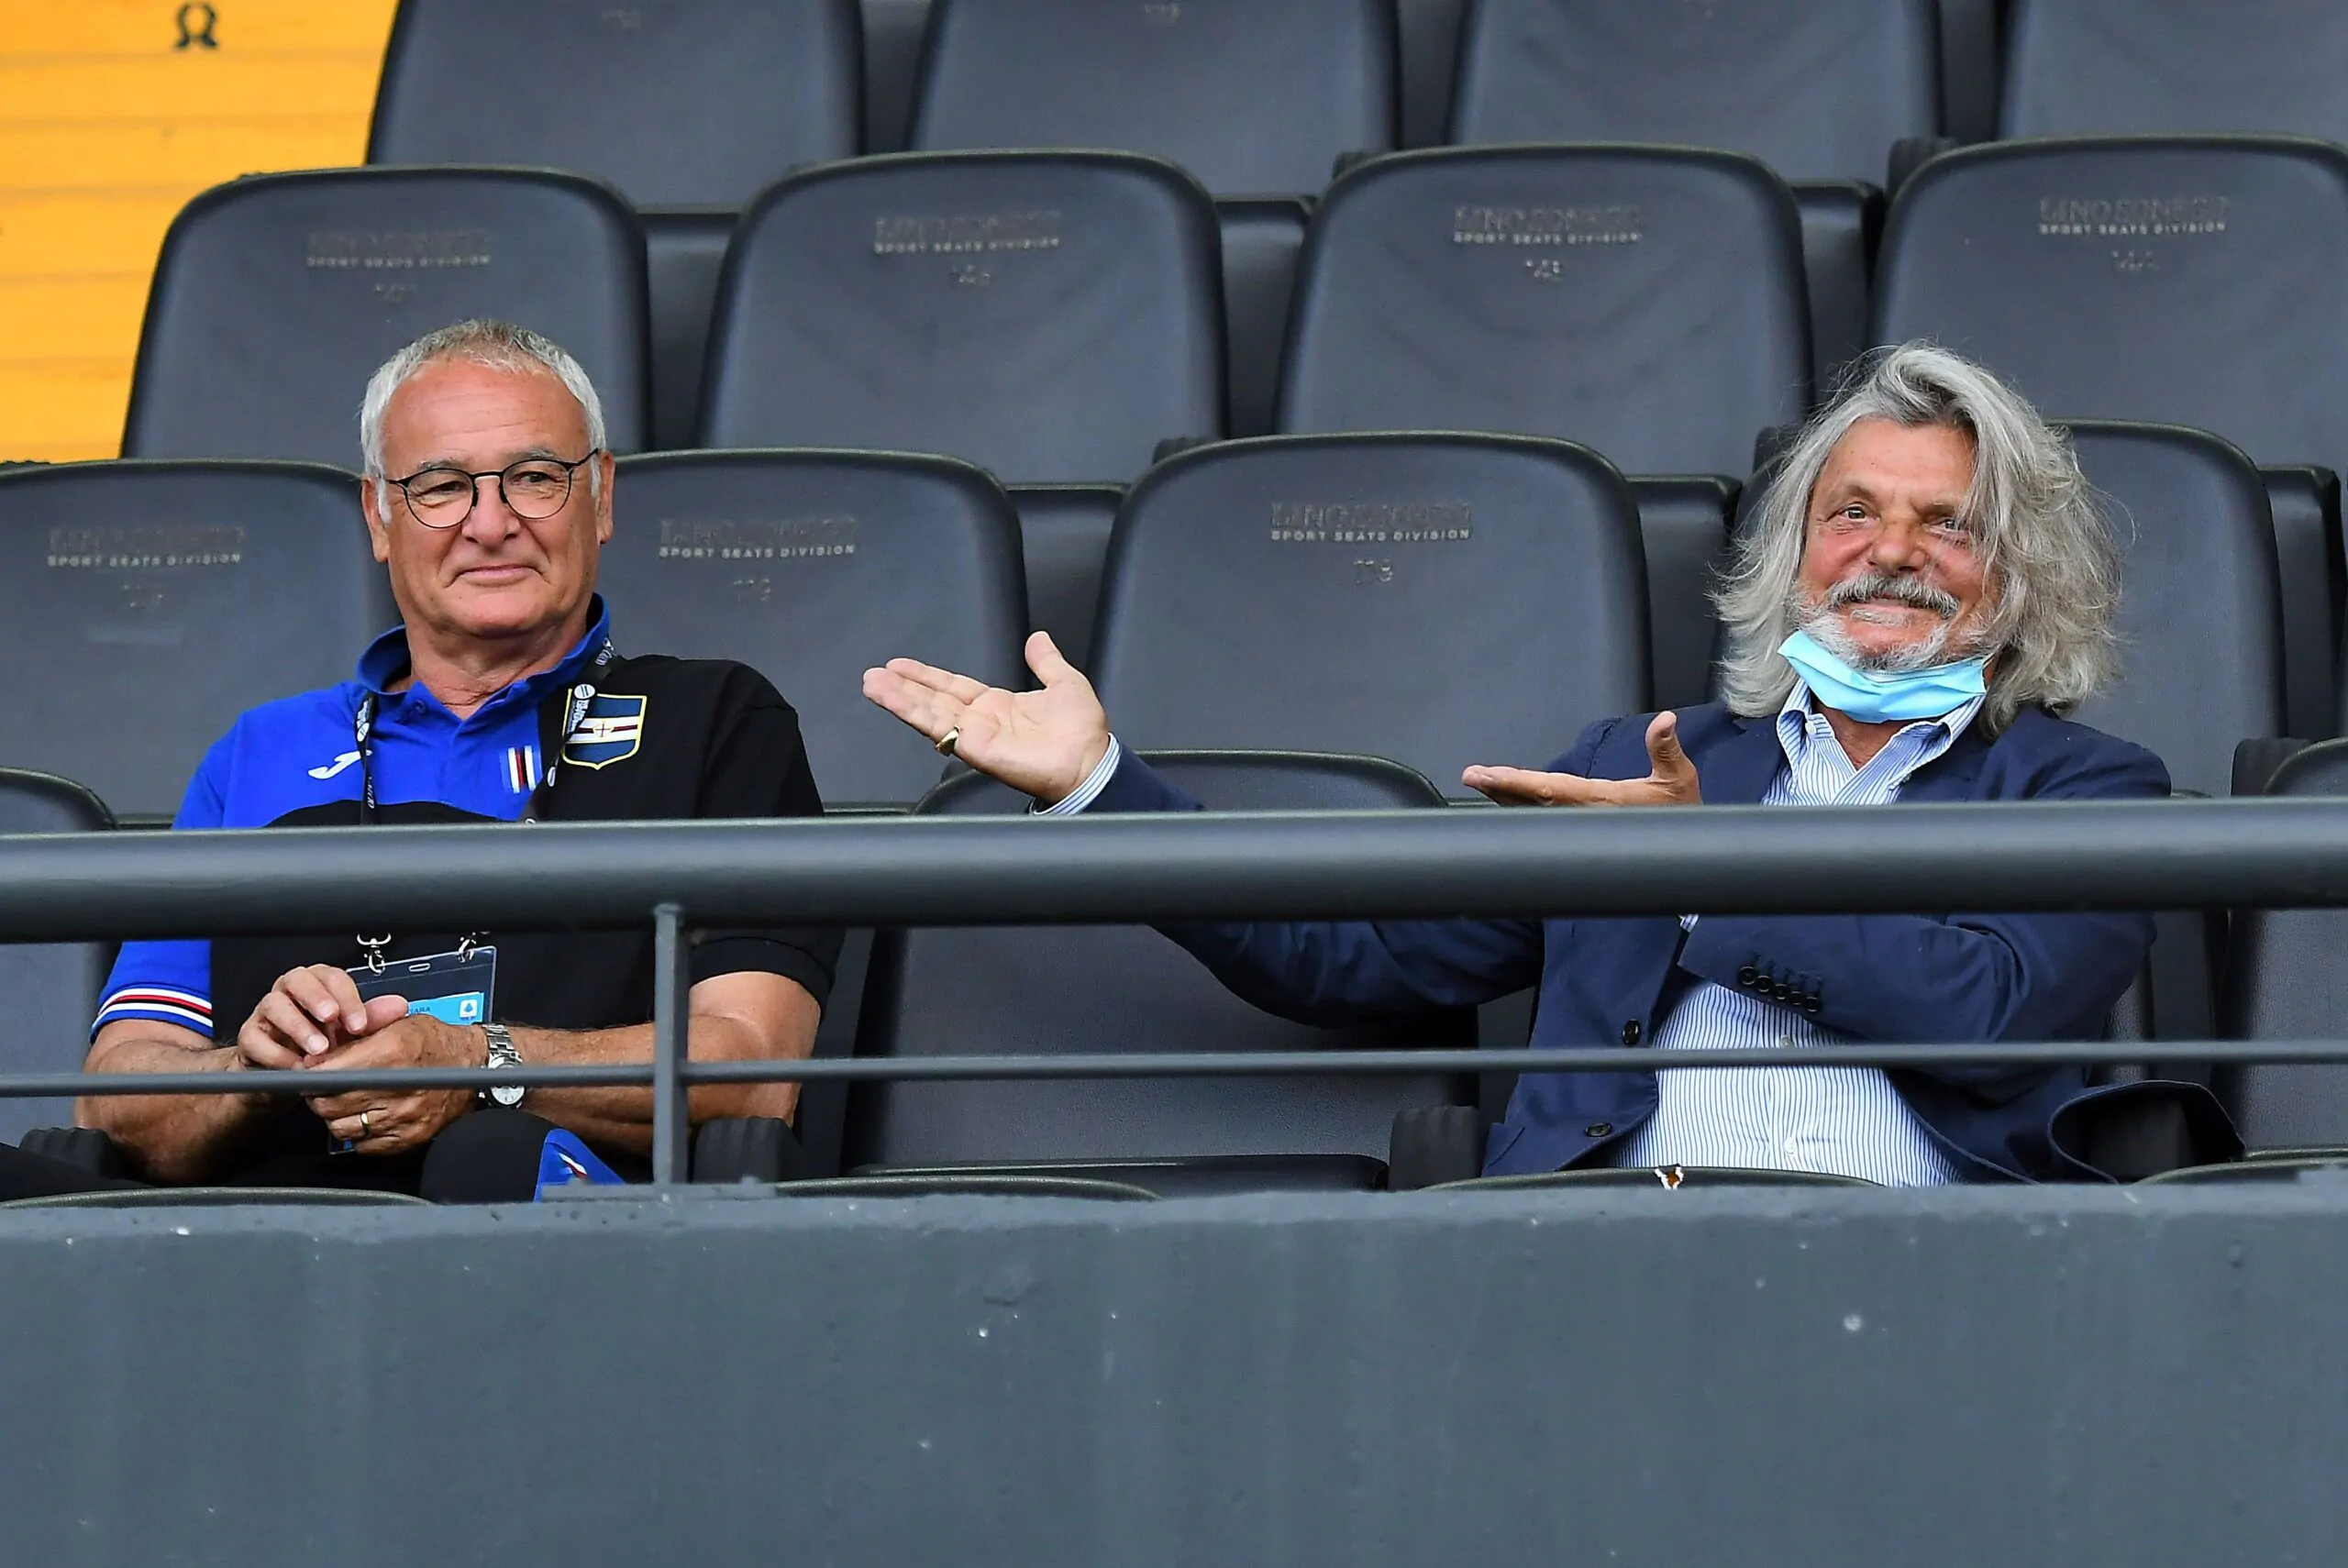 Ranieri lo svela su Ferrero: “Se ho lasciato la Sampdoria è stato per colpa sua!”